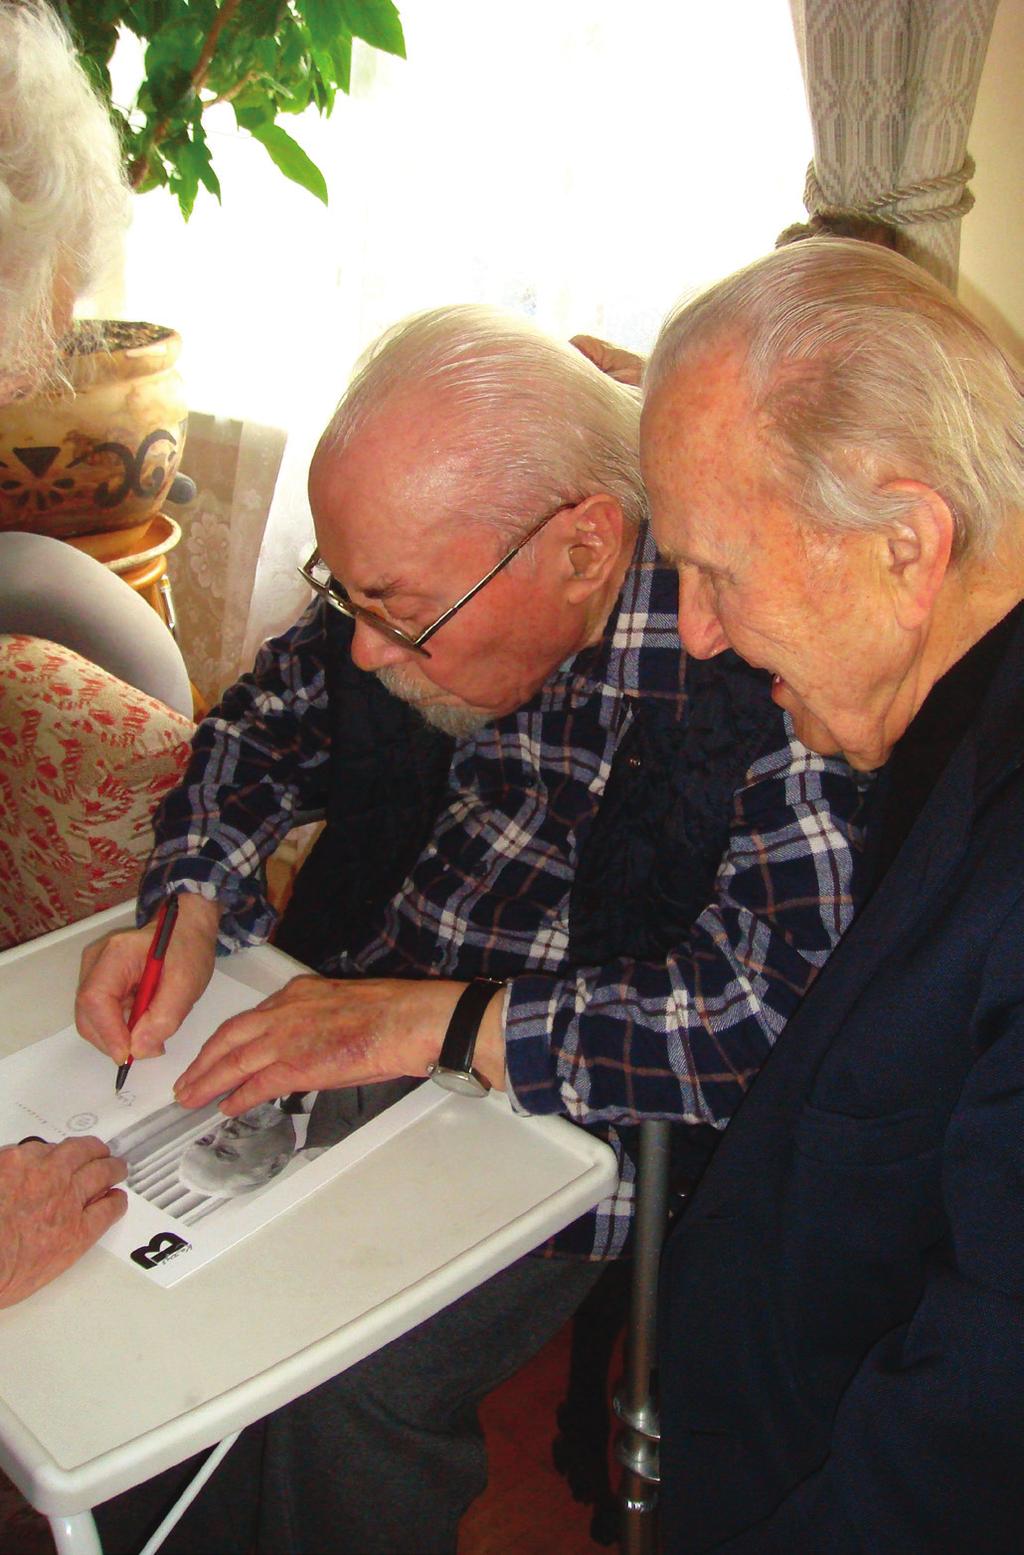 Laikas ir žmonės Kazys Bradūnas rašo autografą senam bičiuliui dr. Kaziui Ambrozaičiui Vilniuje. 2008 m.